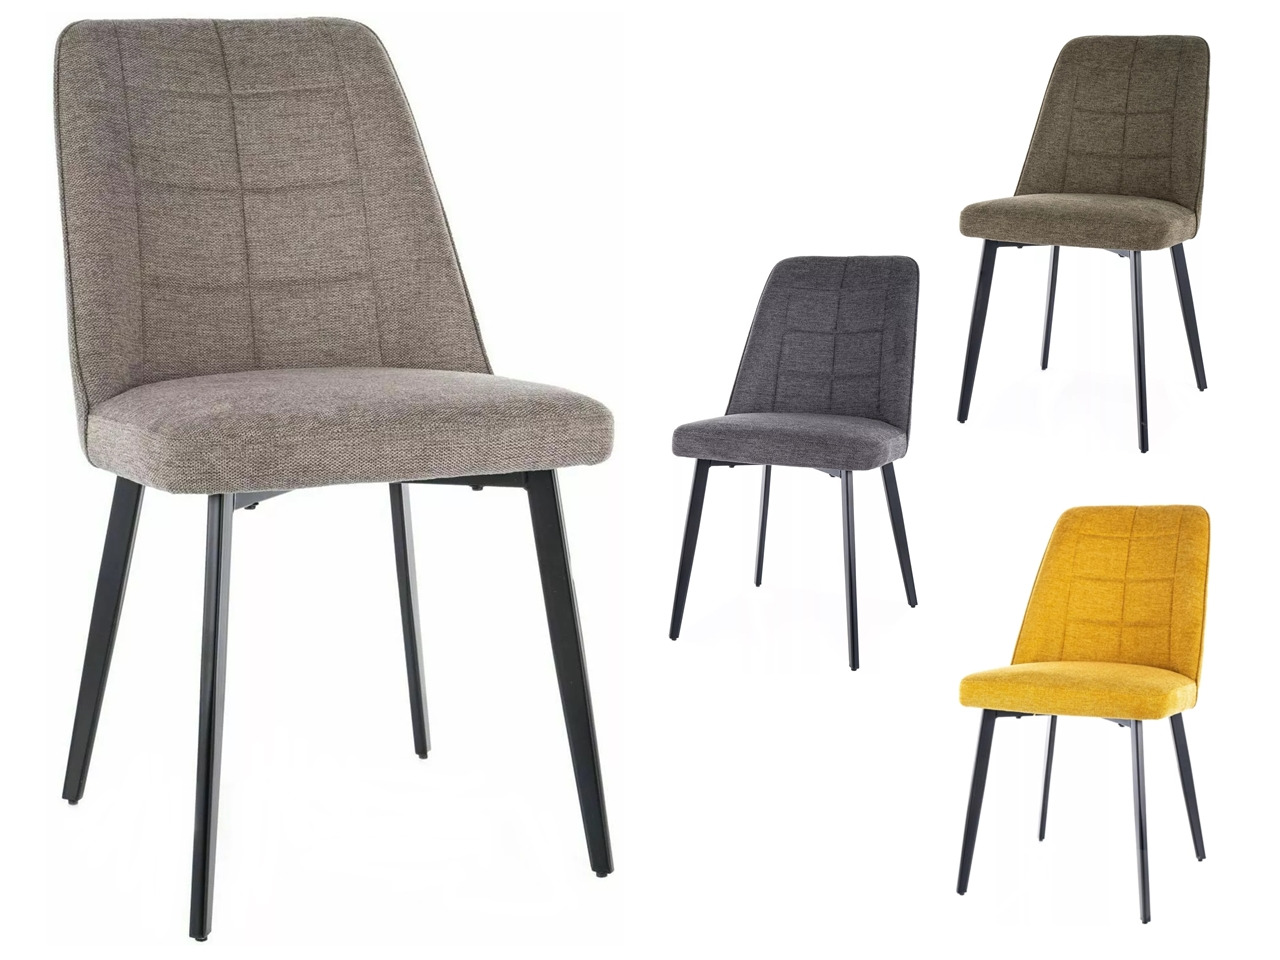 SIG-Aldo Brego modern fémvázas szék